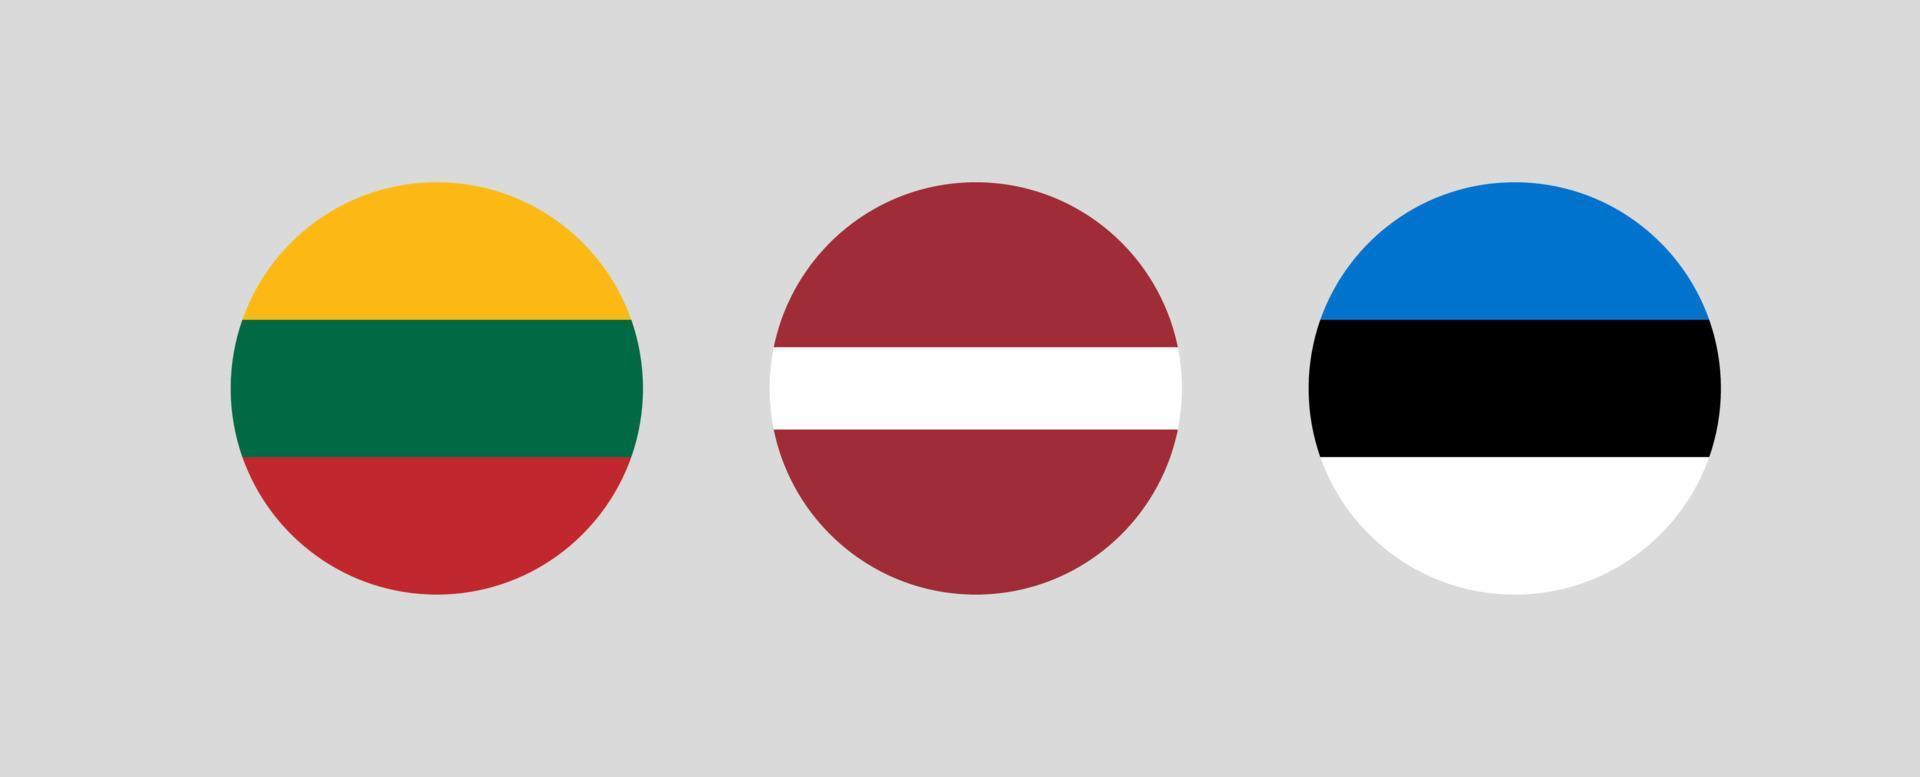 vectorillustratie van vlaggen van de Baltische landen in cirkelvorm op lichtgrijze achtergrond. vlagsymbool van litouwen, letland en estland vector